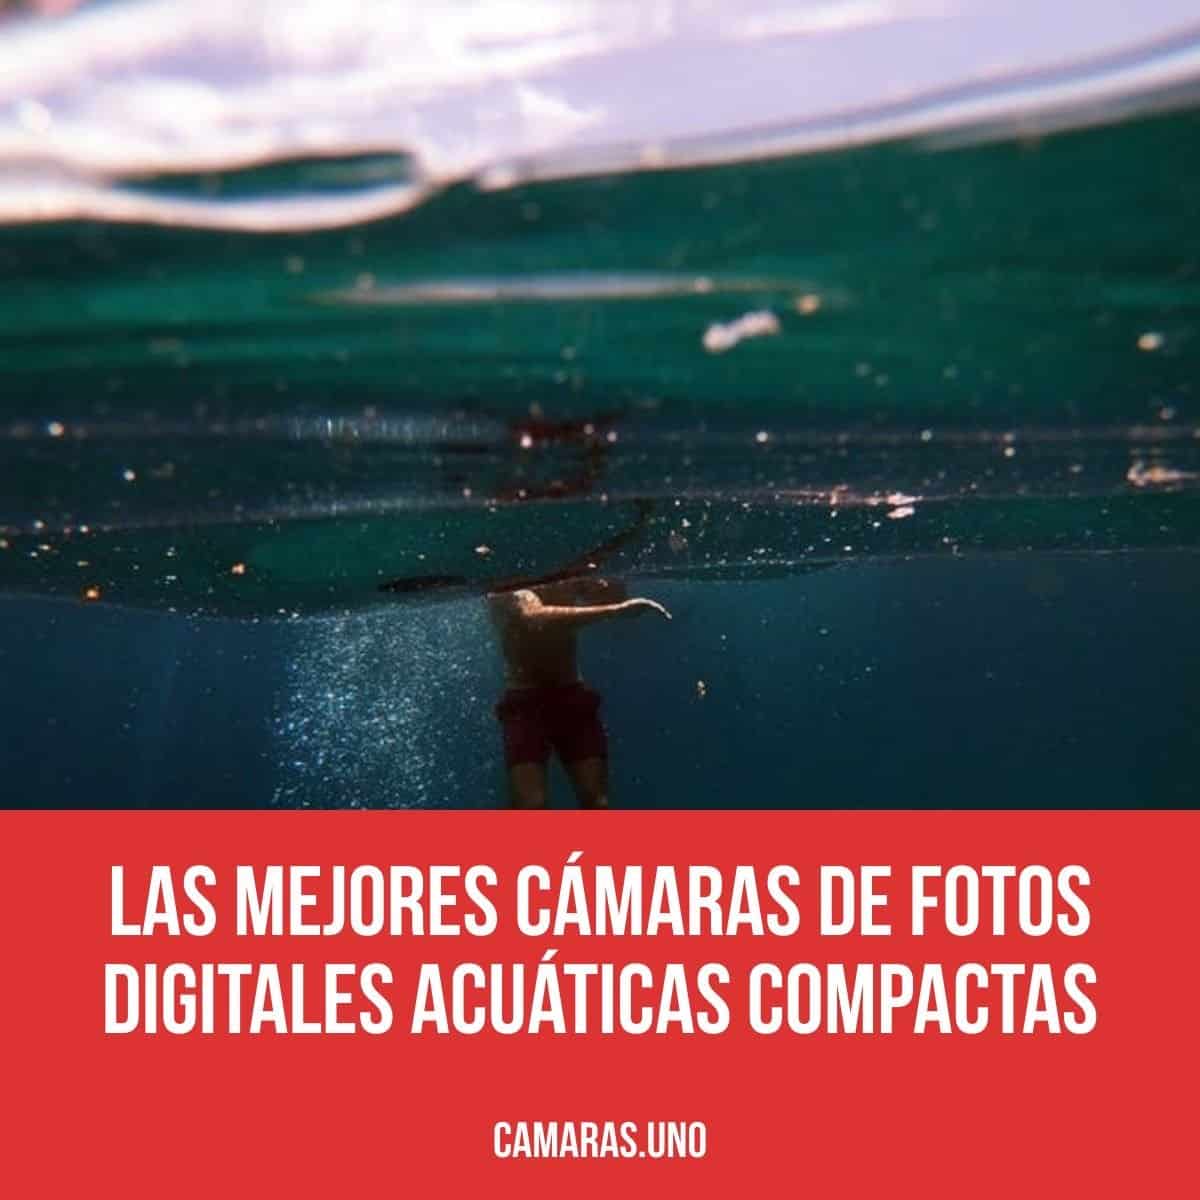 Las mejores cámaras de fotos digitales acuáticas compactas